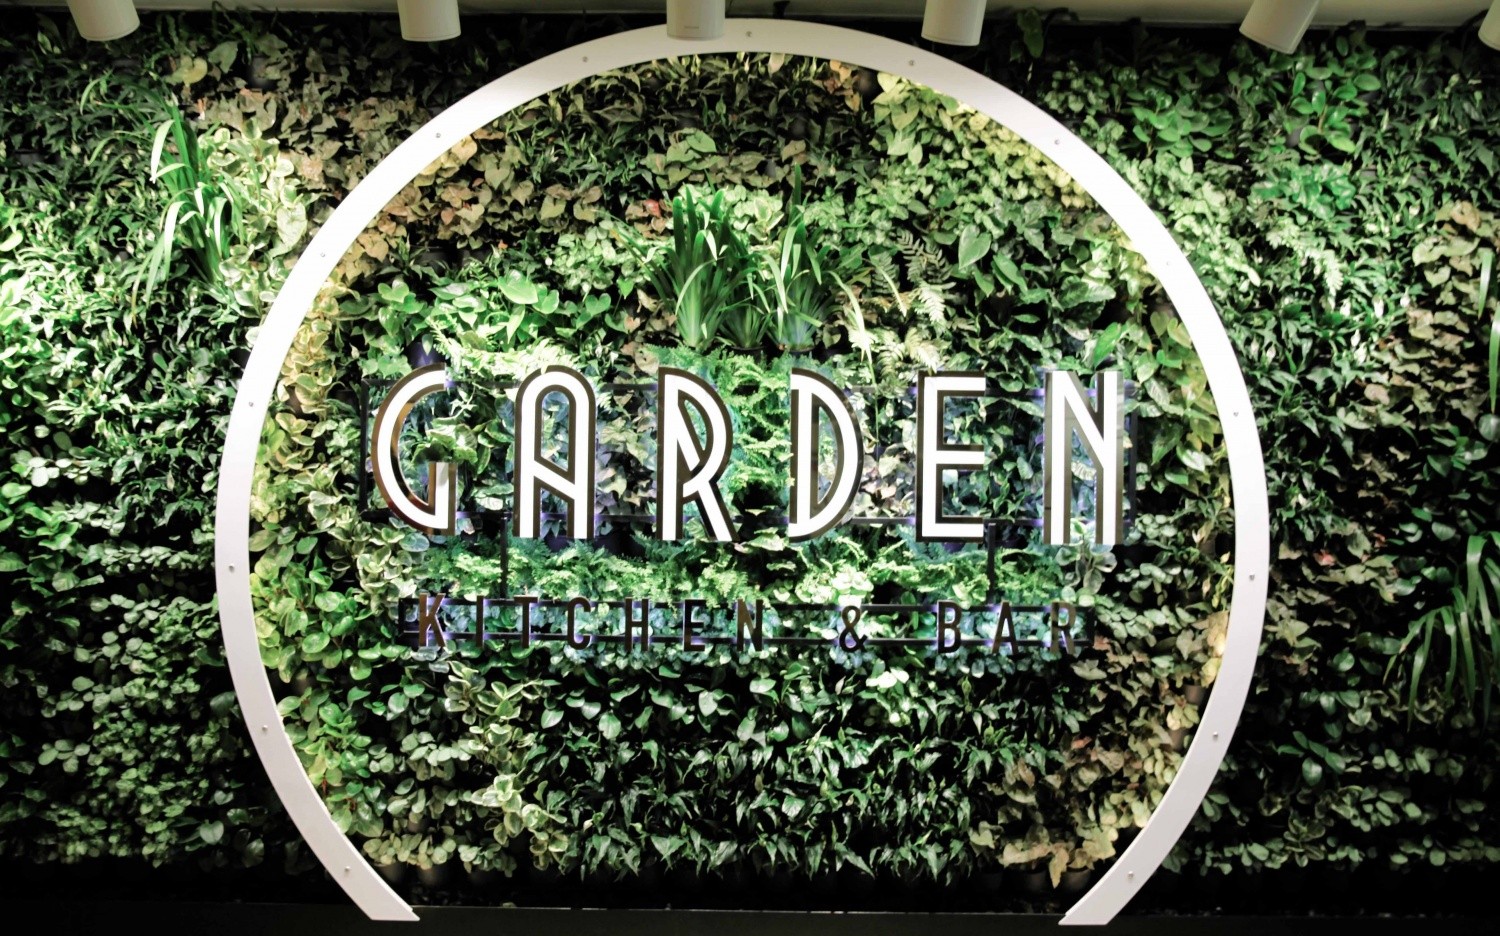 Garden Kitchen & Bar